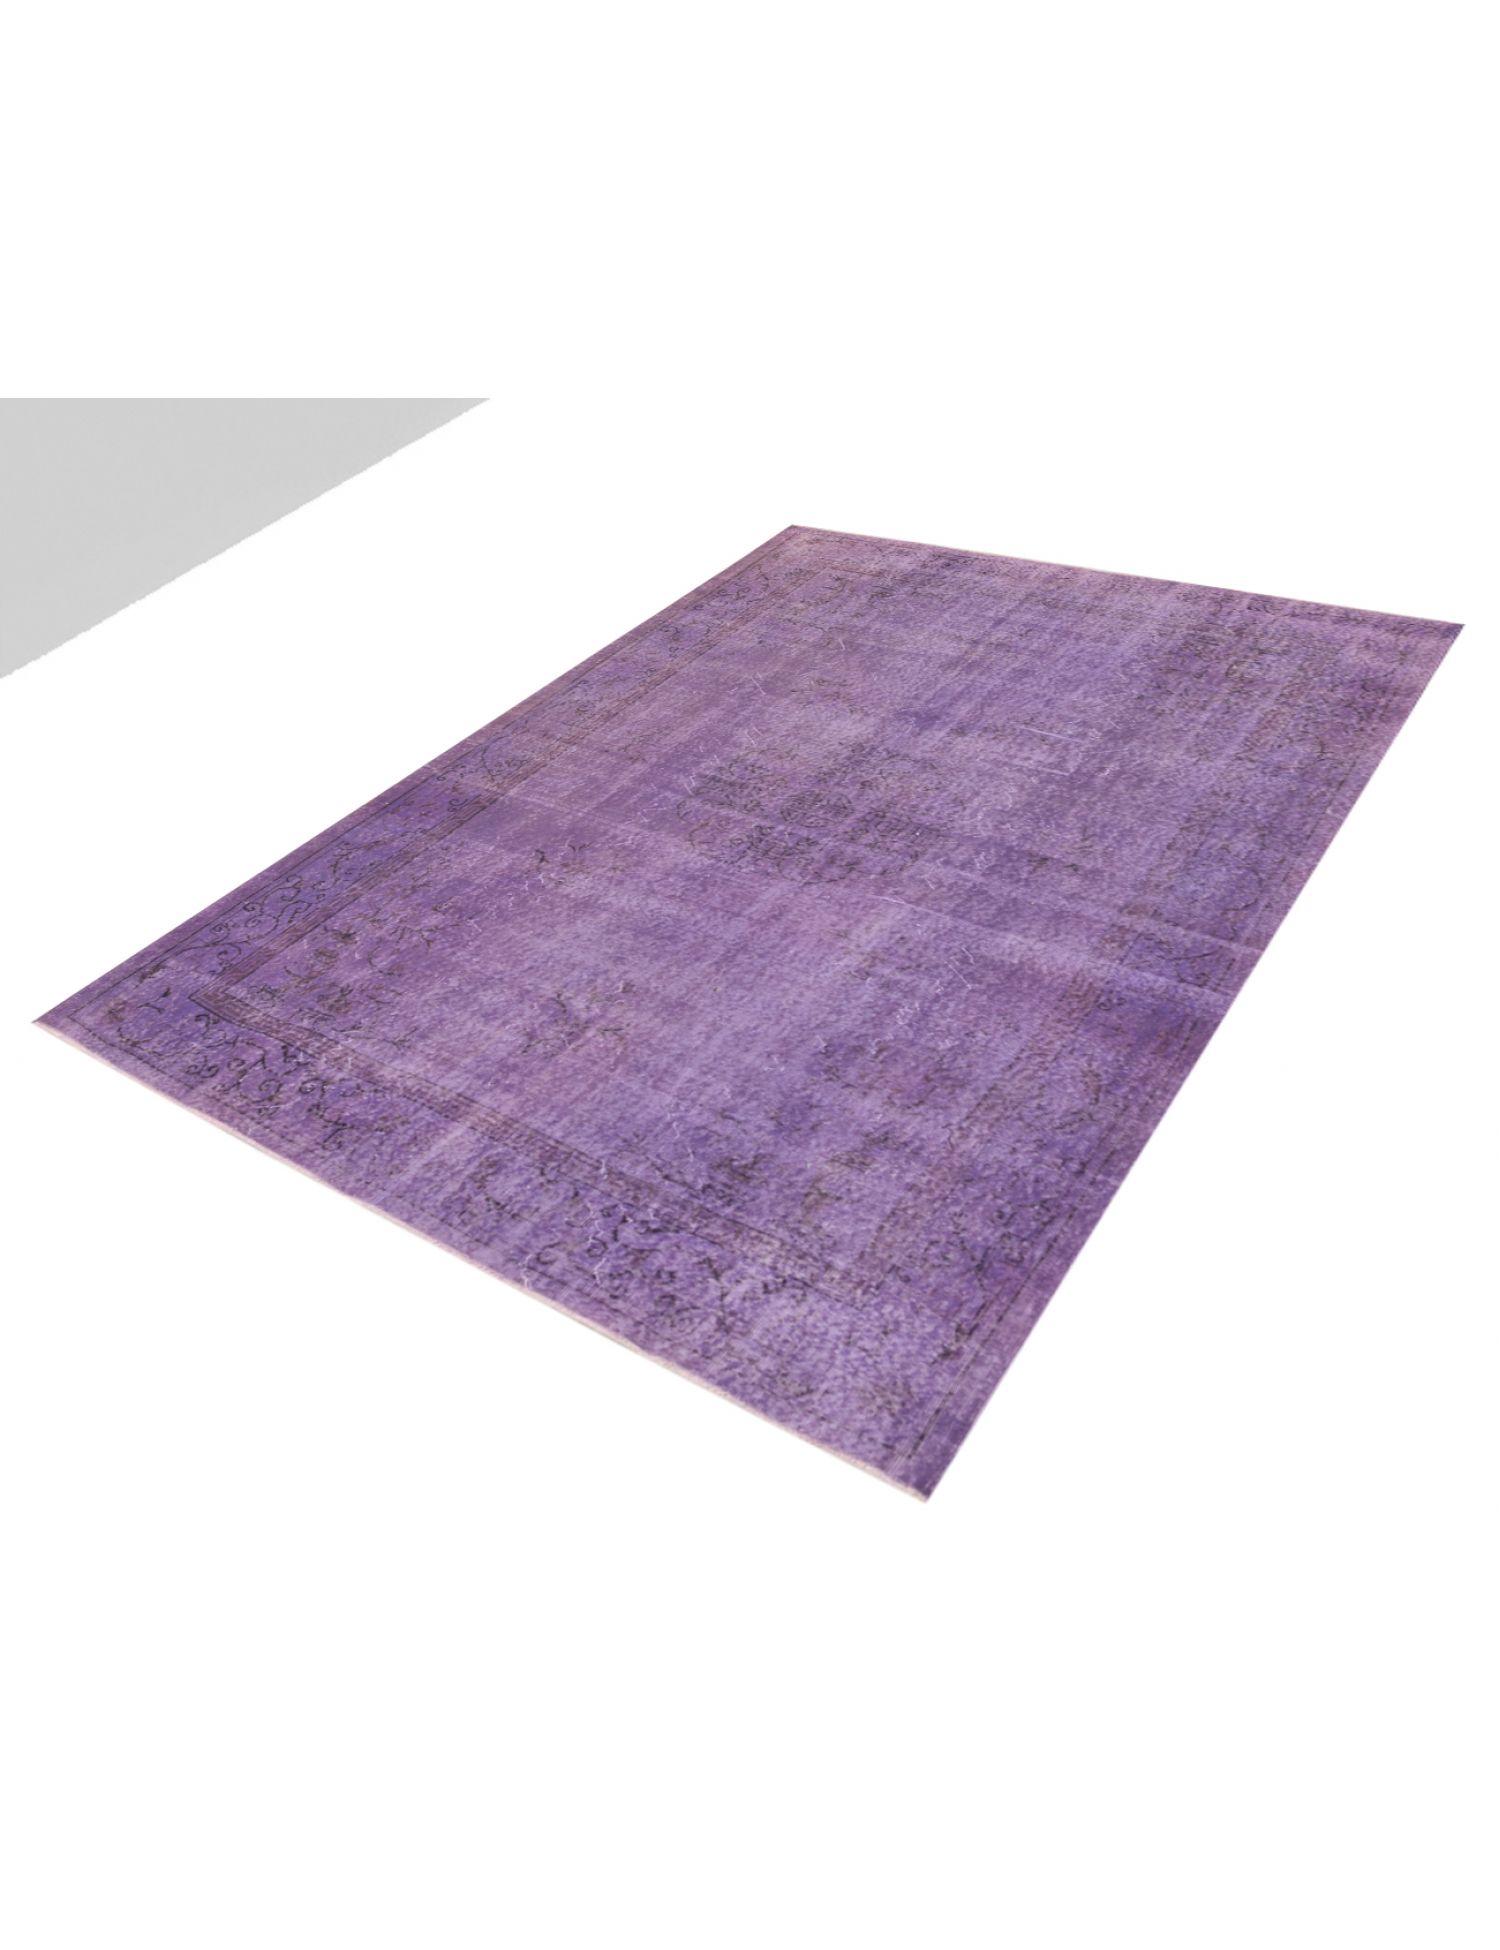  Vintage Tapis  violet <br/>306 x 210 cm